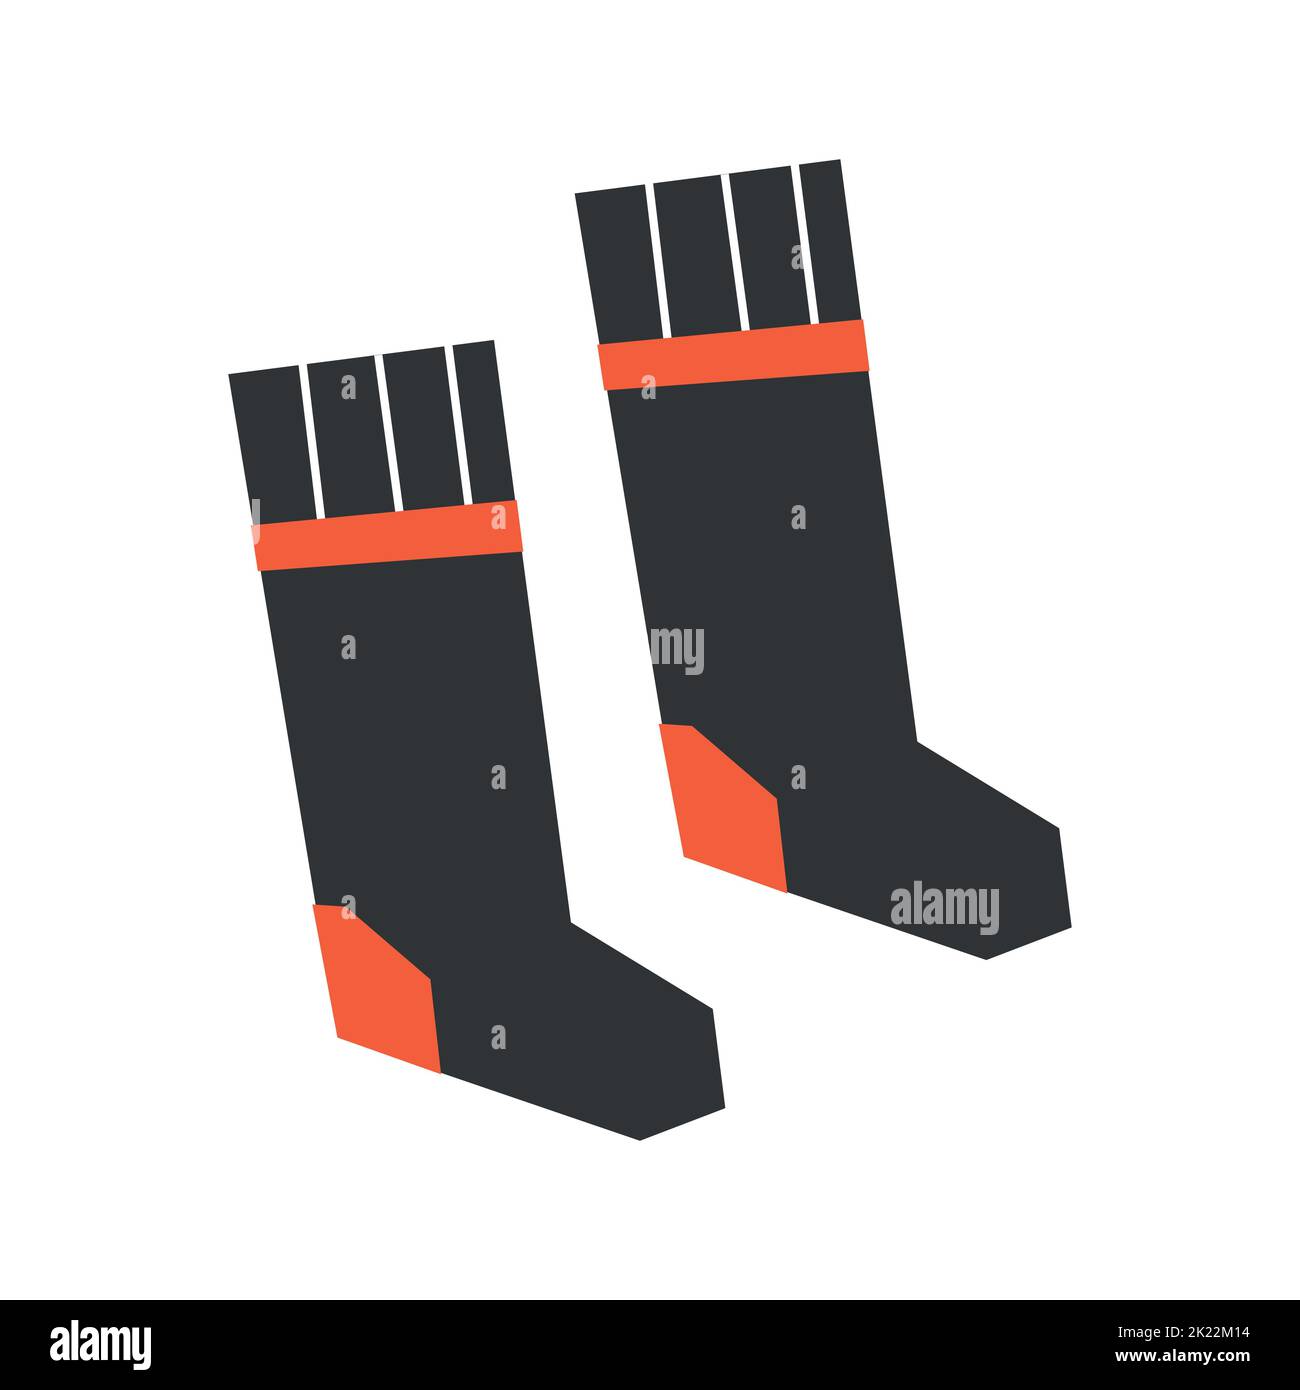 Vektor-isoliertes flaches Konzept. Paar schwarze Weihnachts-Socken mit orangefarbenem Absatz und Linie. Winter und Herbst Symbol für gemütliche und warme Kleidung. Geom Stock Vektor